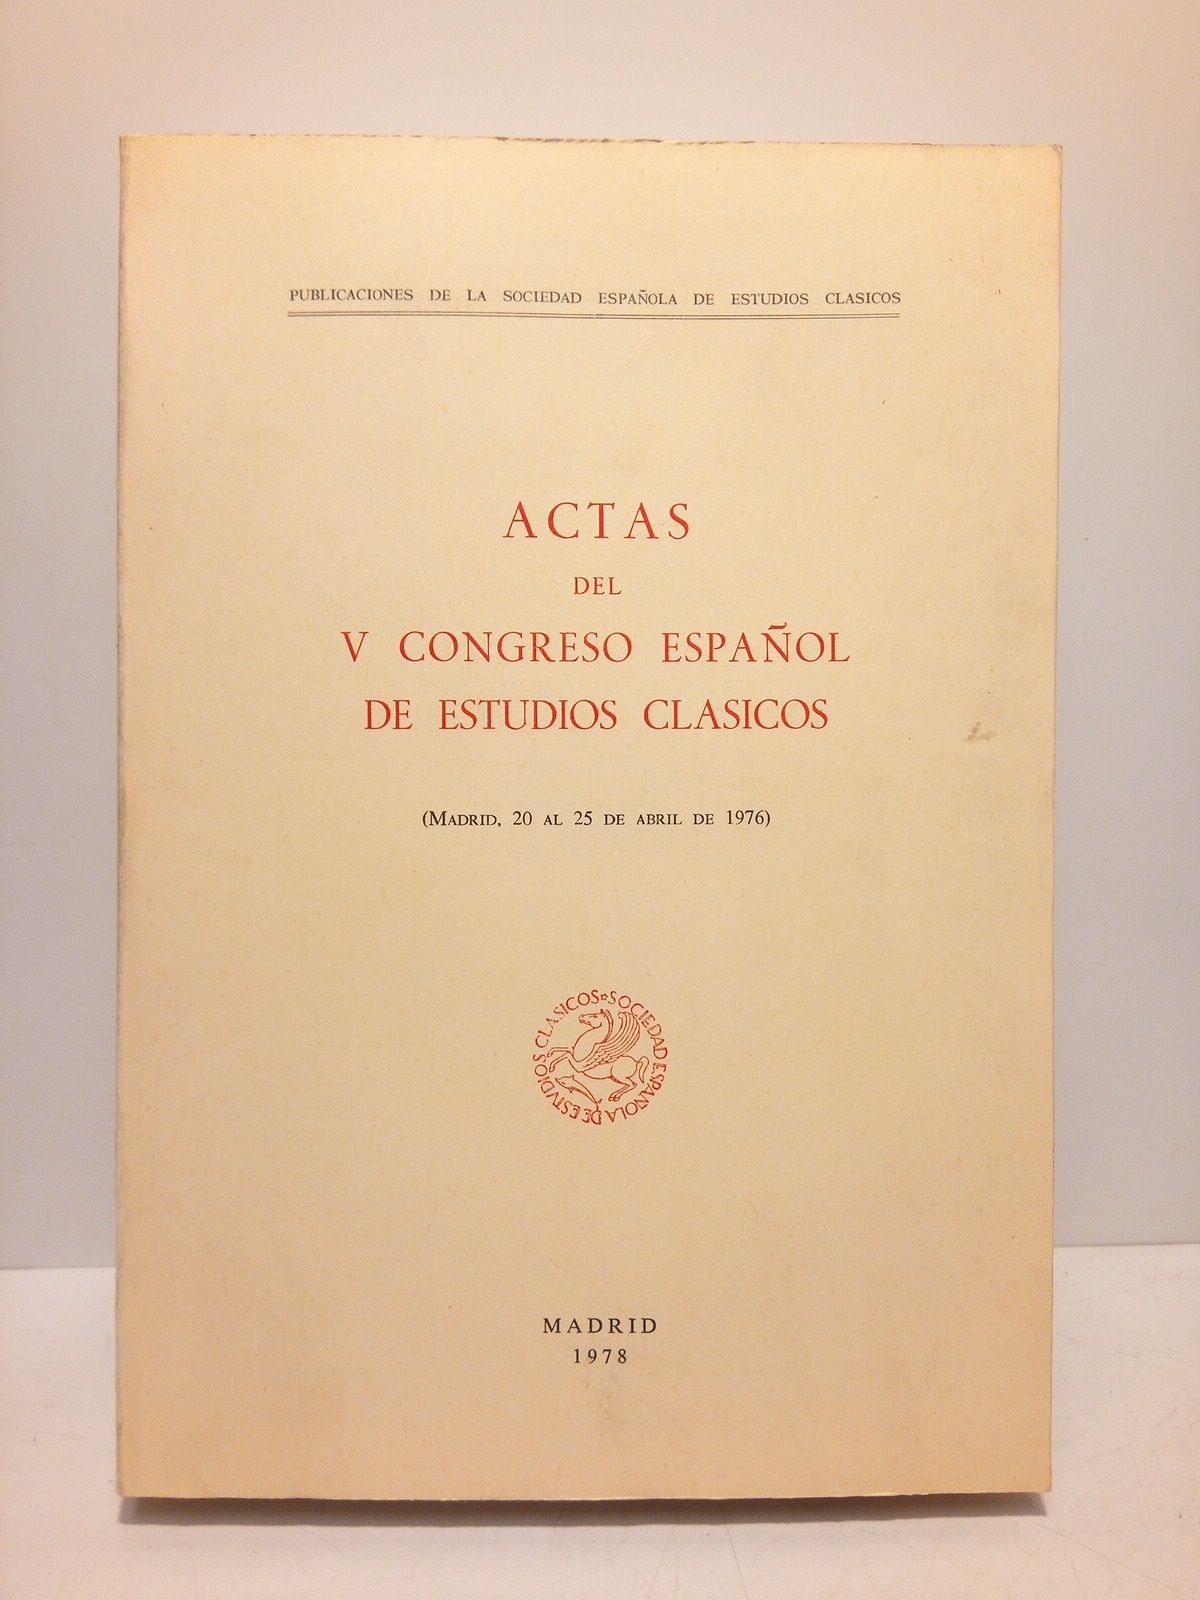 VARIOS - Actas del V Congreso Espaol de Estudios Clsicos (Madrid, 20 al 25 de abril de 1976)